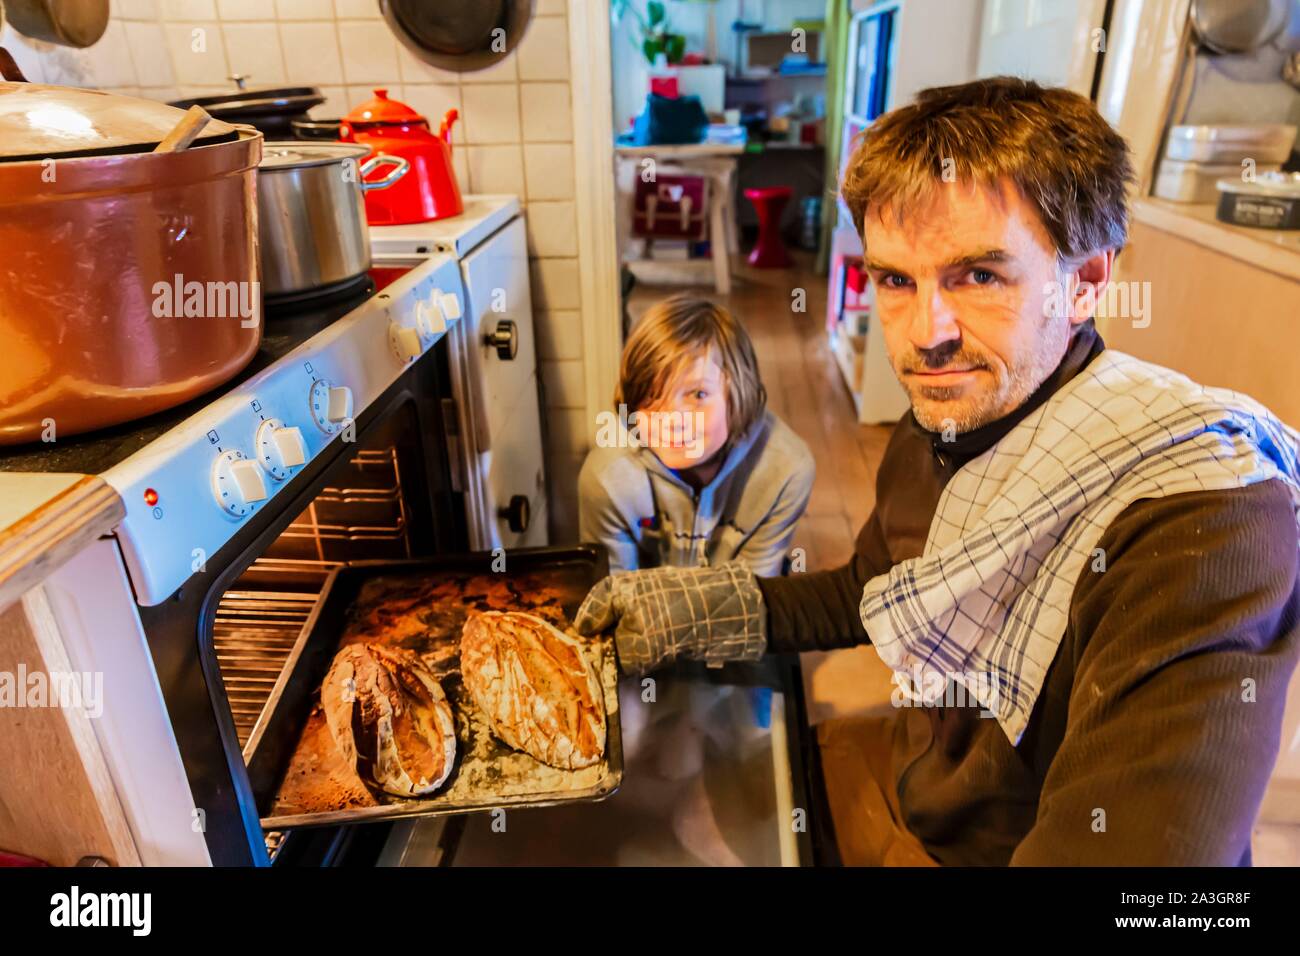 La Suède, dans le comté de Vastra Sweden Hokerum Ulricehamn, hameau, Rochat rapport sur la famille, chaque matin, Pierre cuit le pain avec la masse de la farine à la pierre et préparé la veille avec son levain Banque D'Images